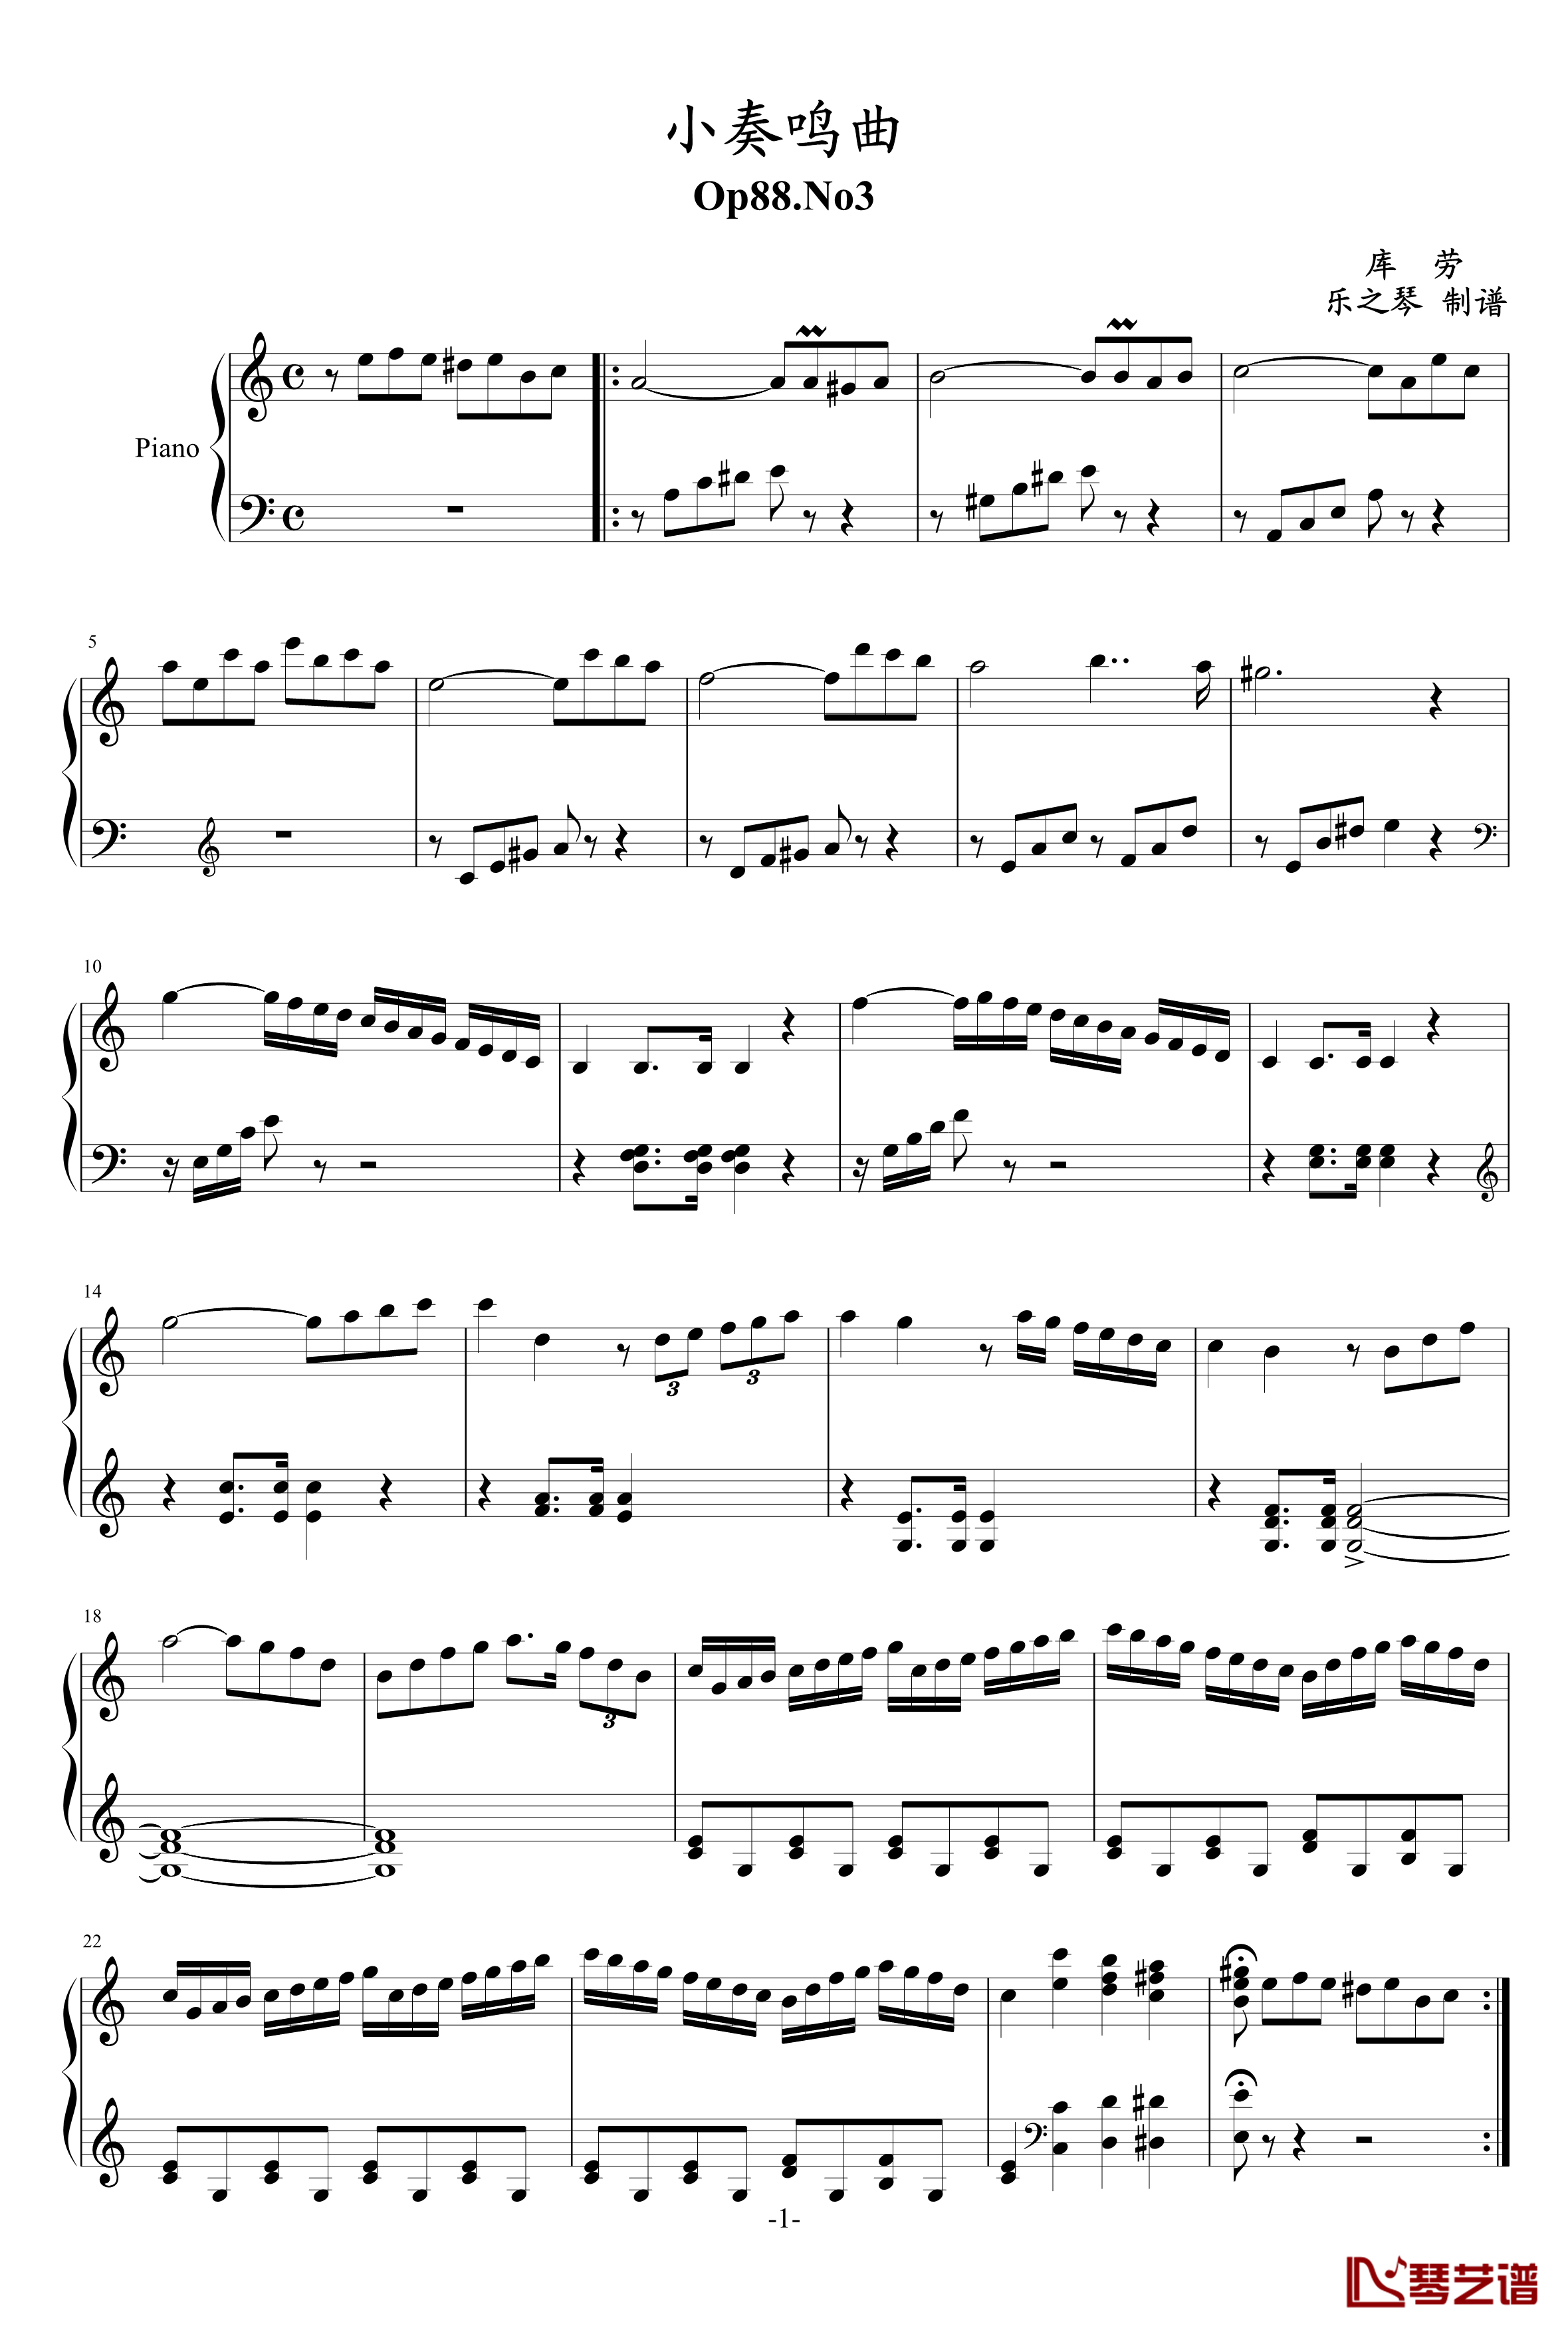 小奏鸣曲钢琴谱-Op88.No3-库劳1